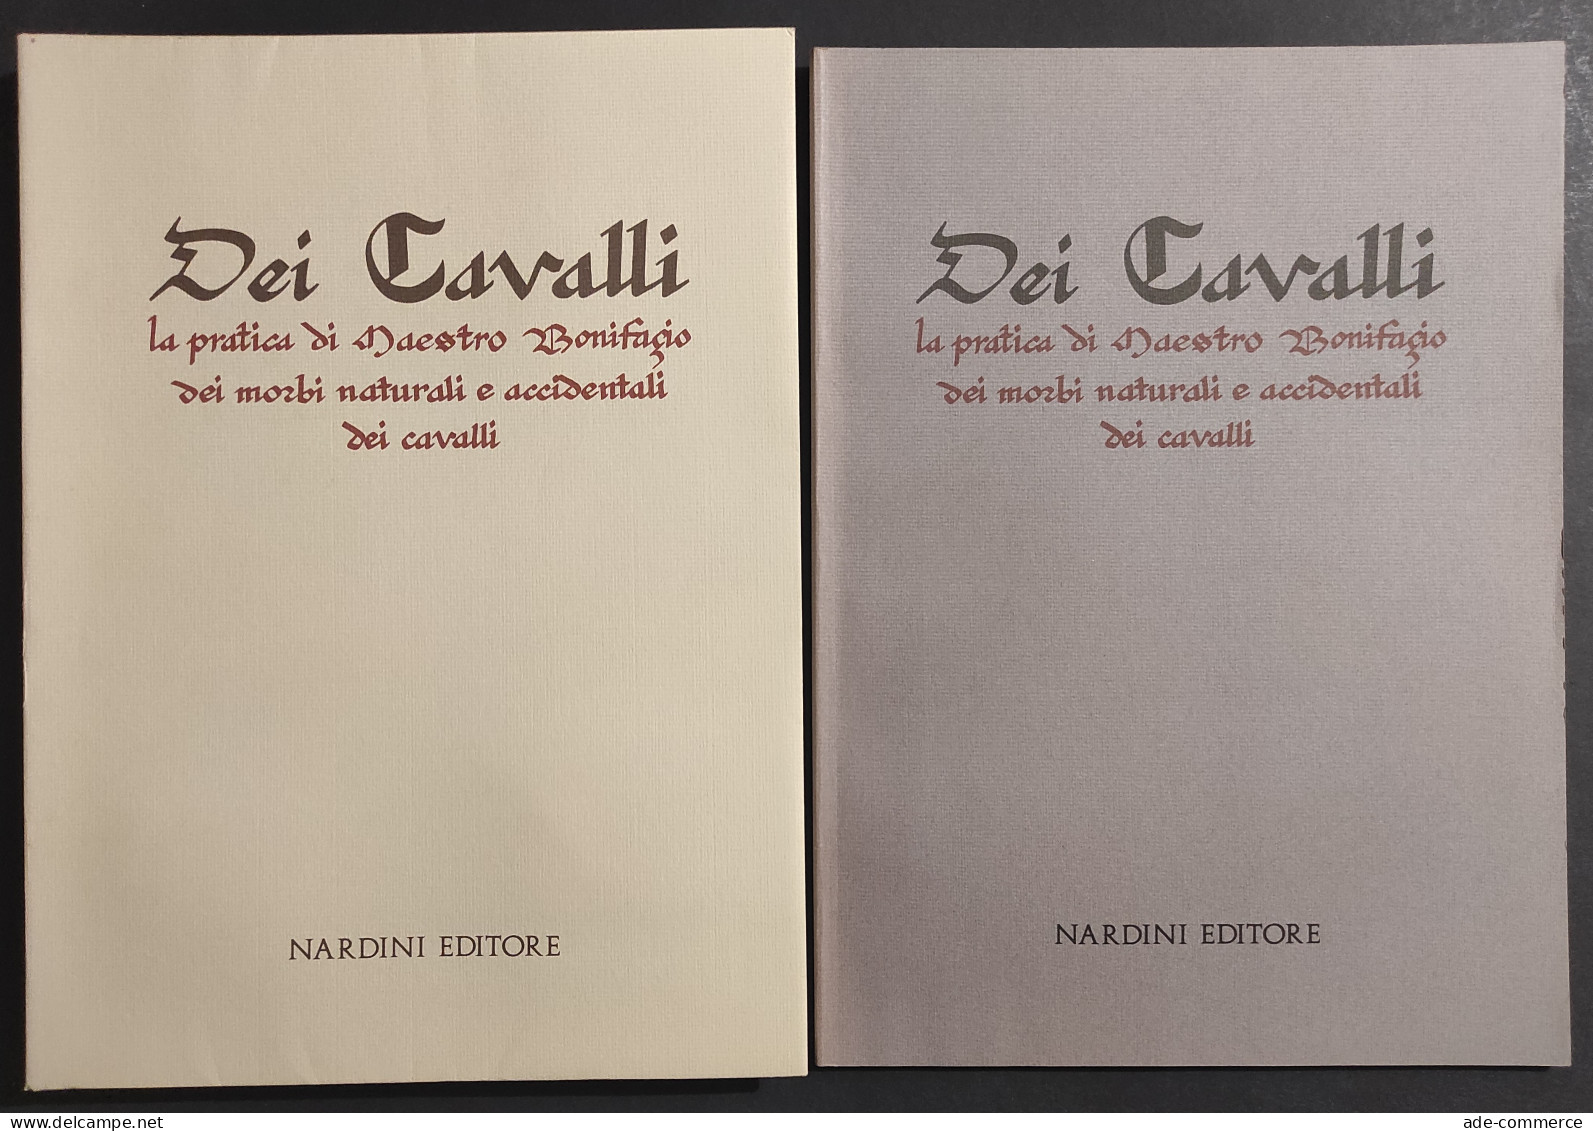 Dei Cavalli - Pratica Maestro Bonifacio Morbi Cavalli - Ed. Nardini - 1988 - Pets